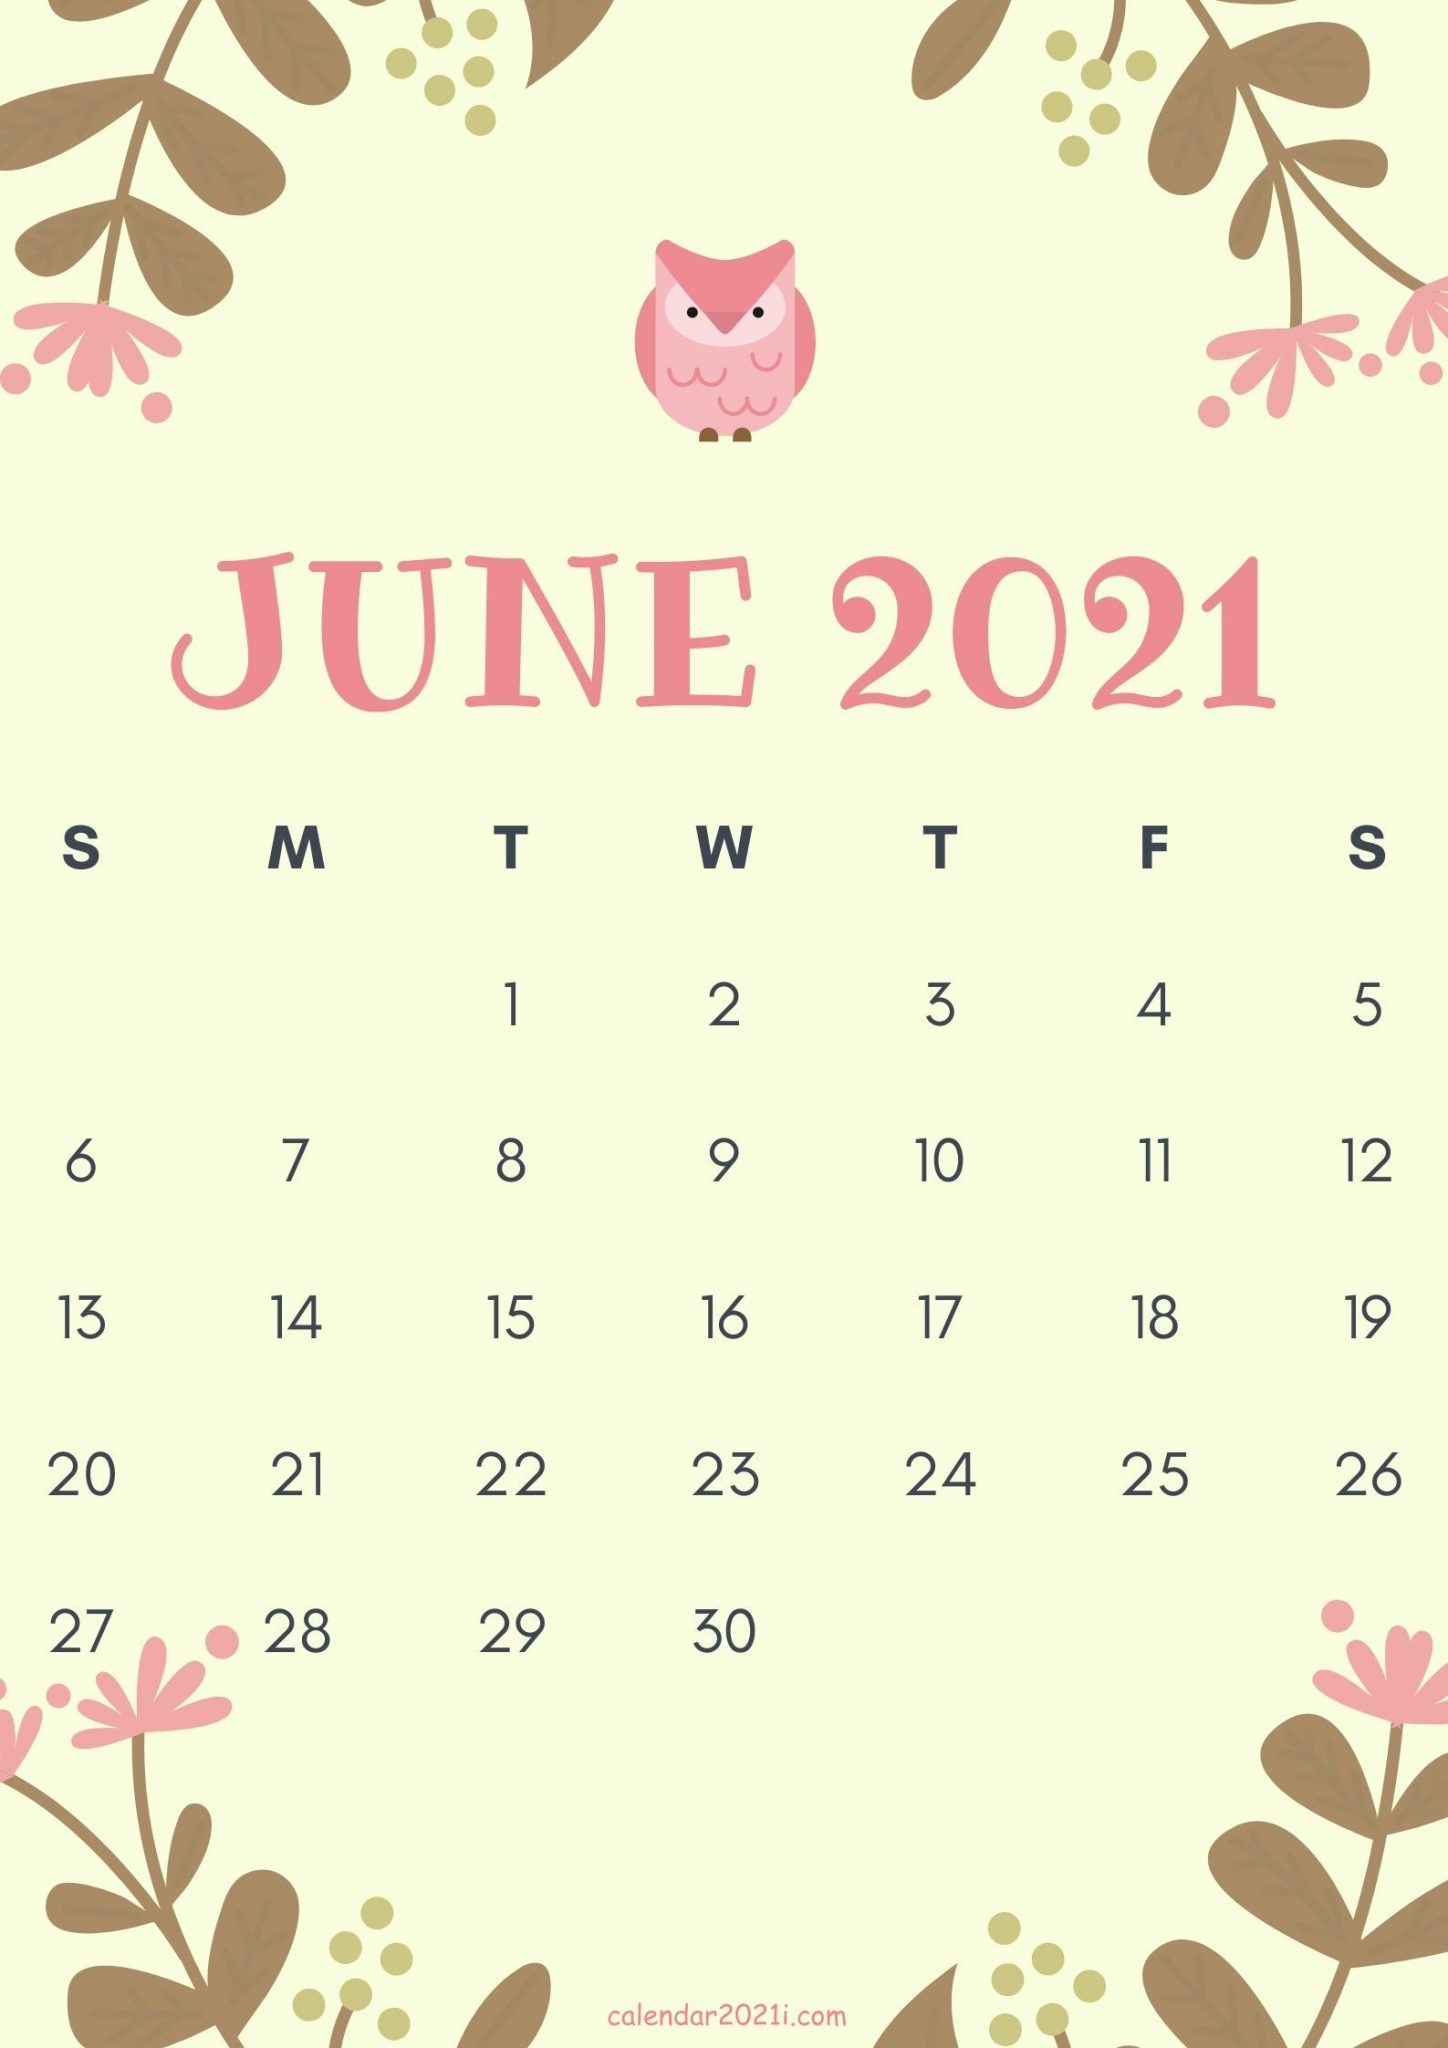 June 2021 Cute Calendar Design